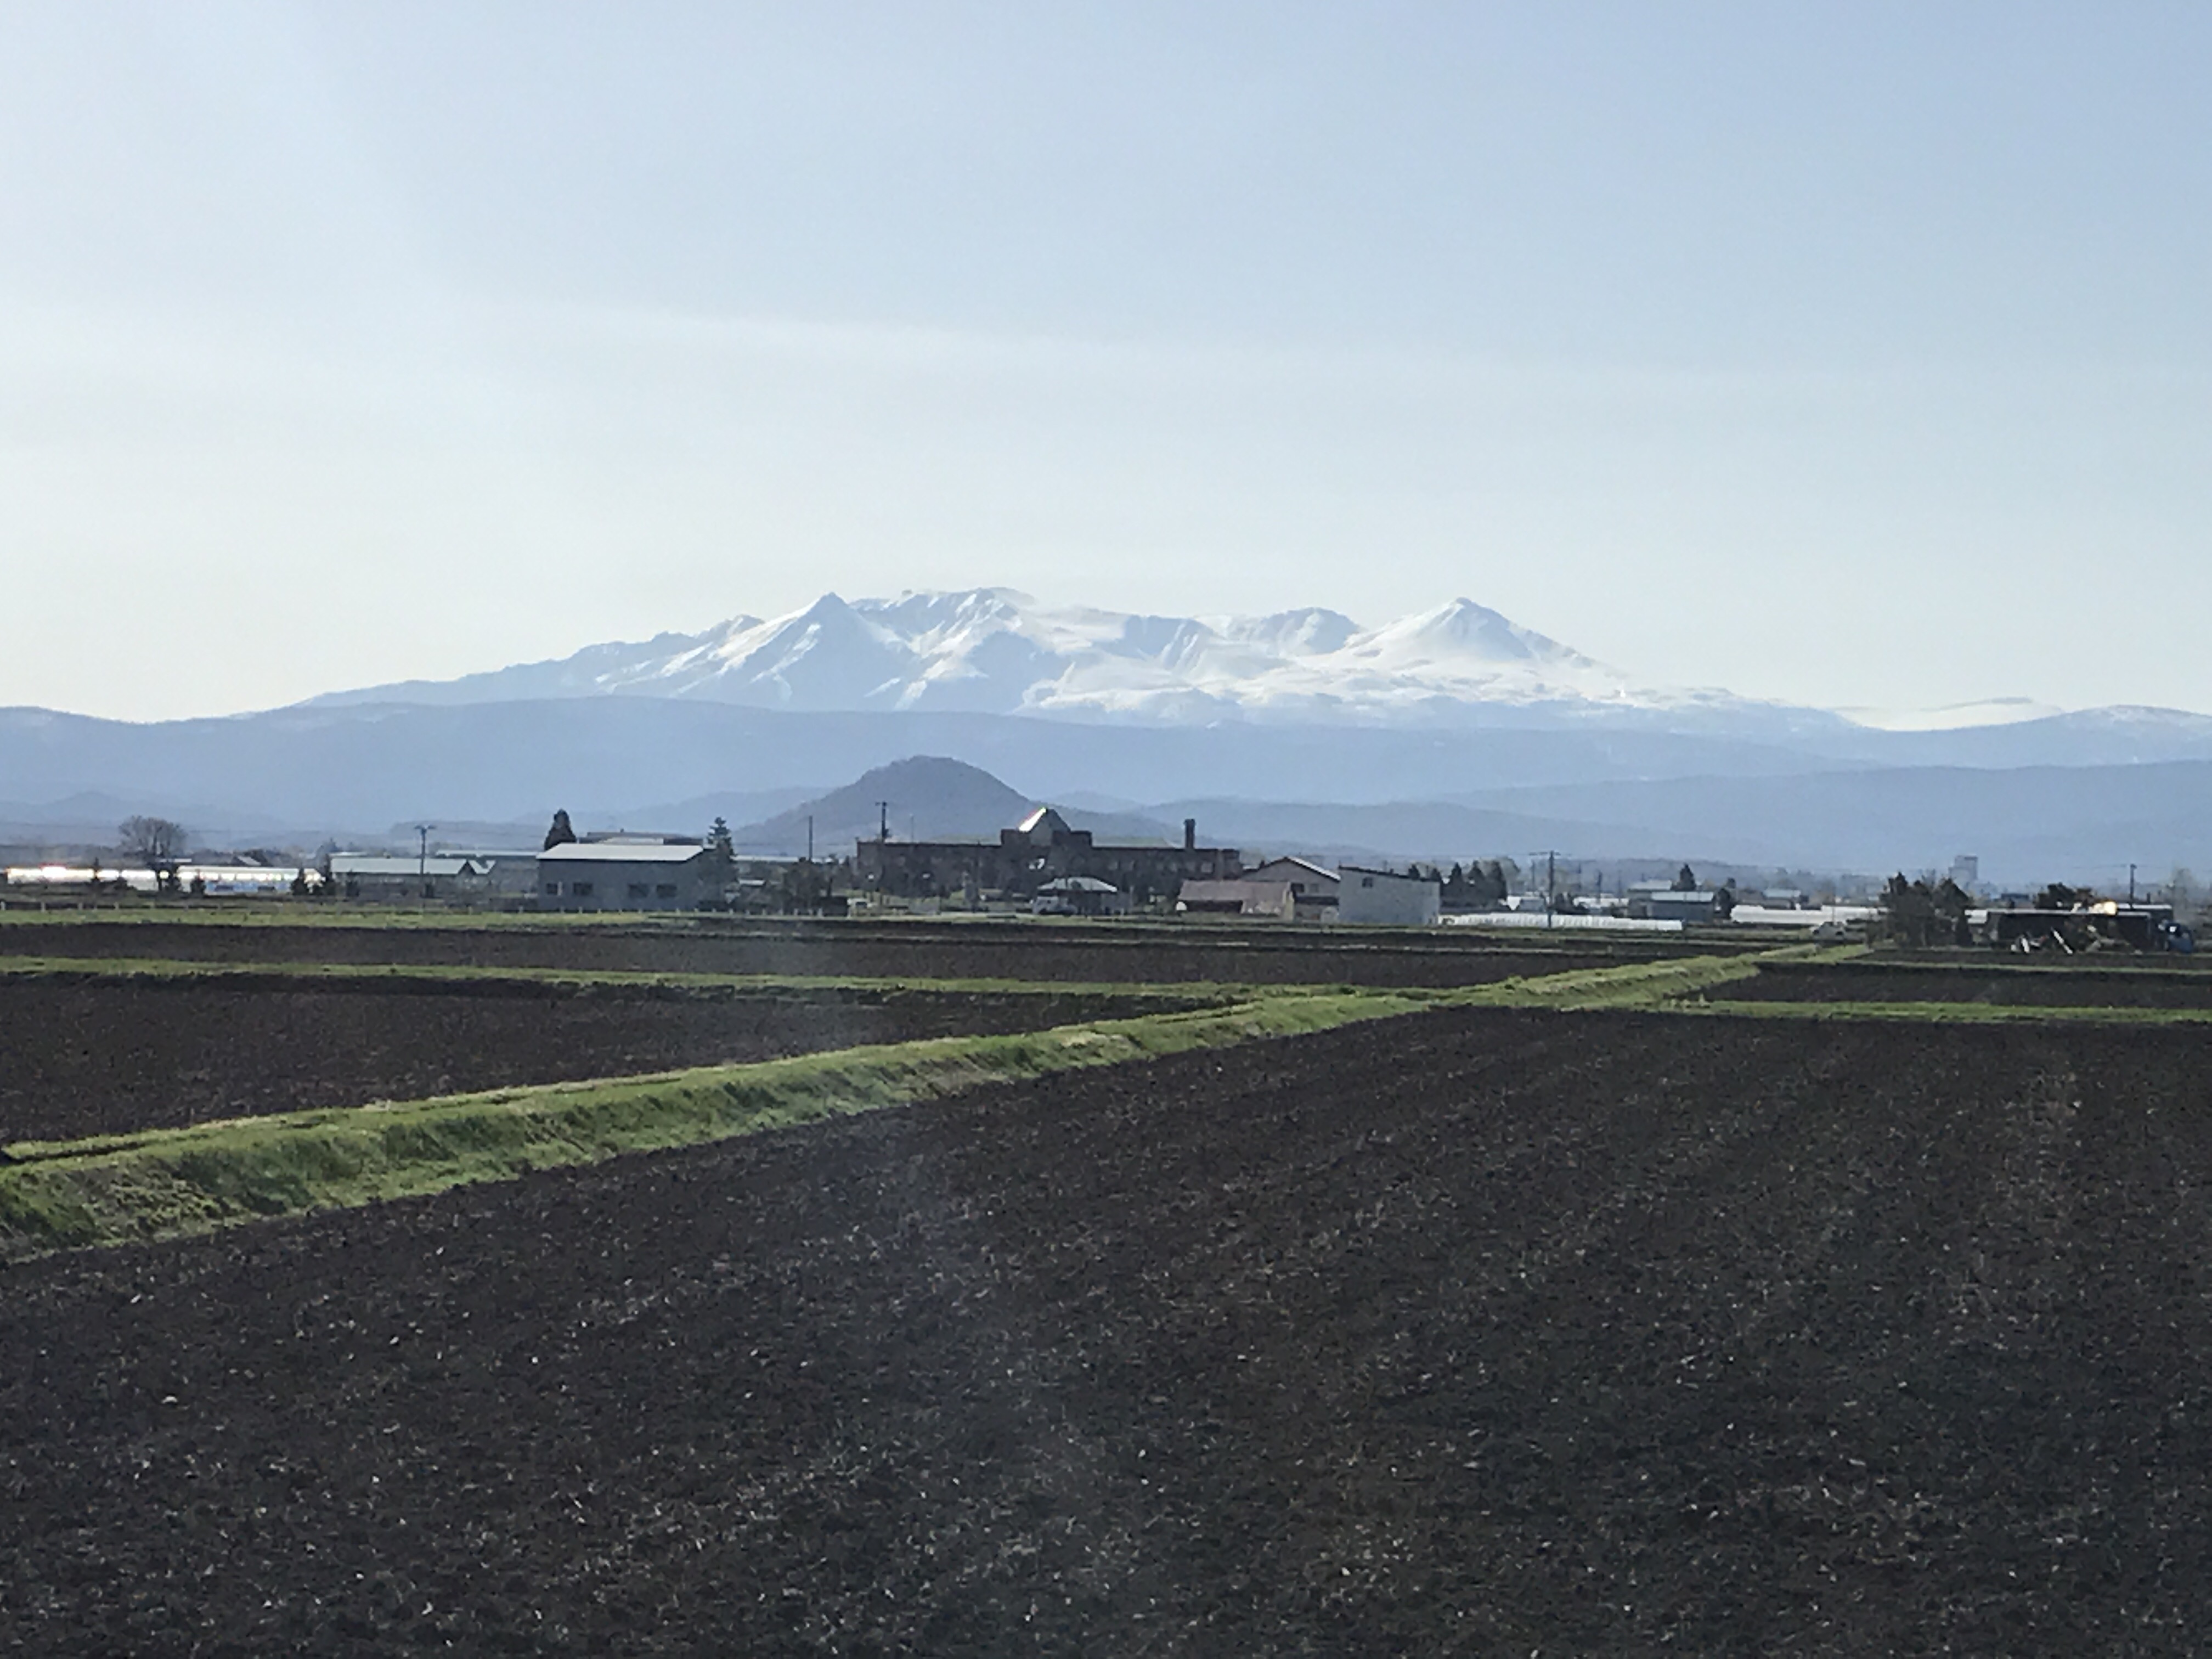 ぴっぷからみる大雪山が綺麗で癒される-比布町内から見た風景|社長のブログ | 大熊養鶏場